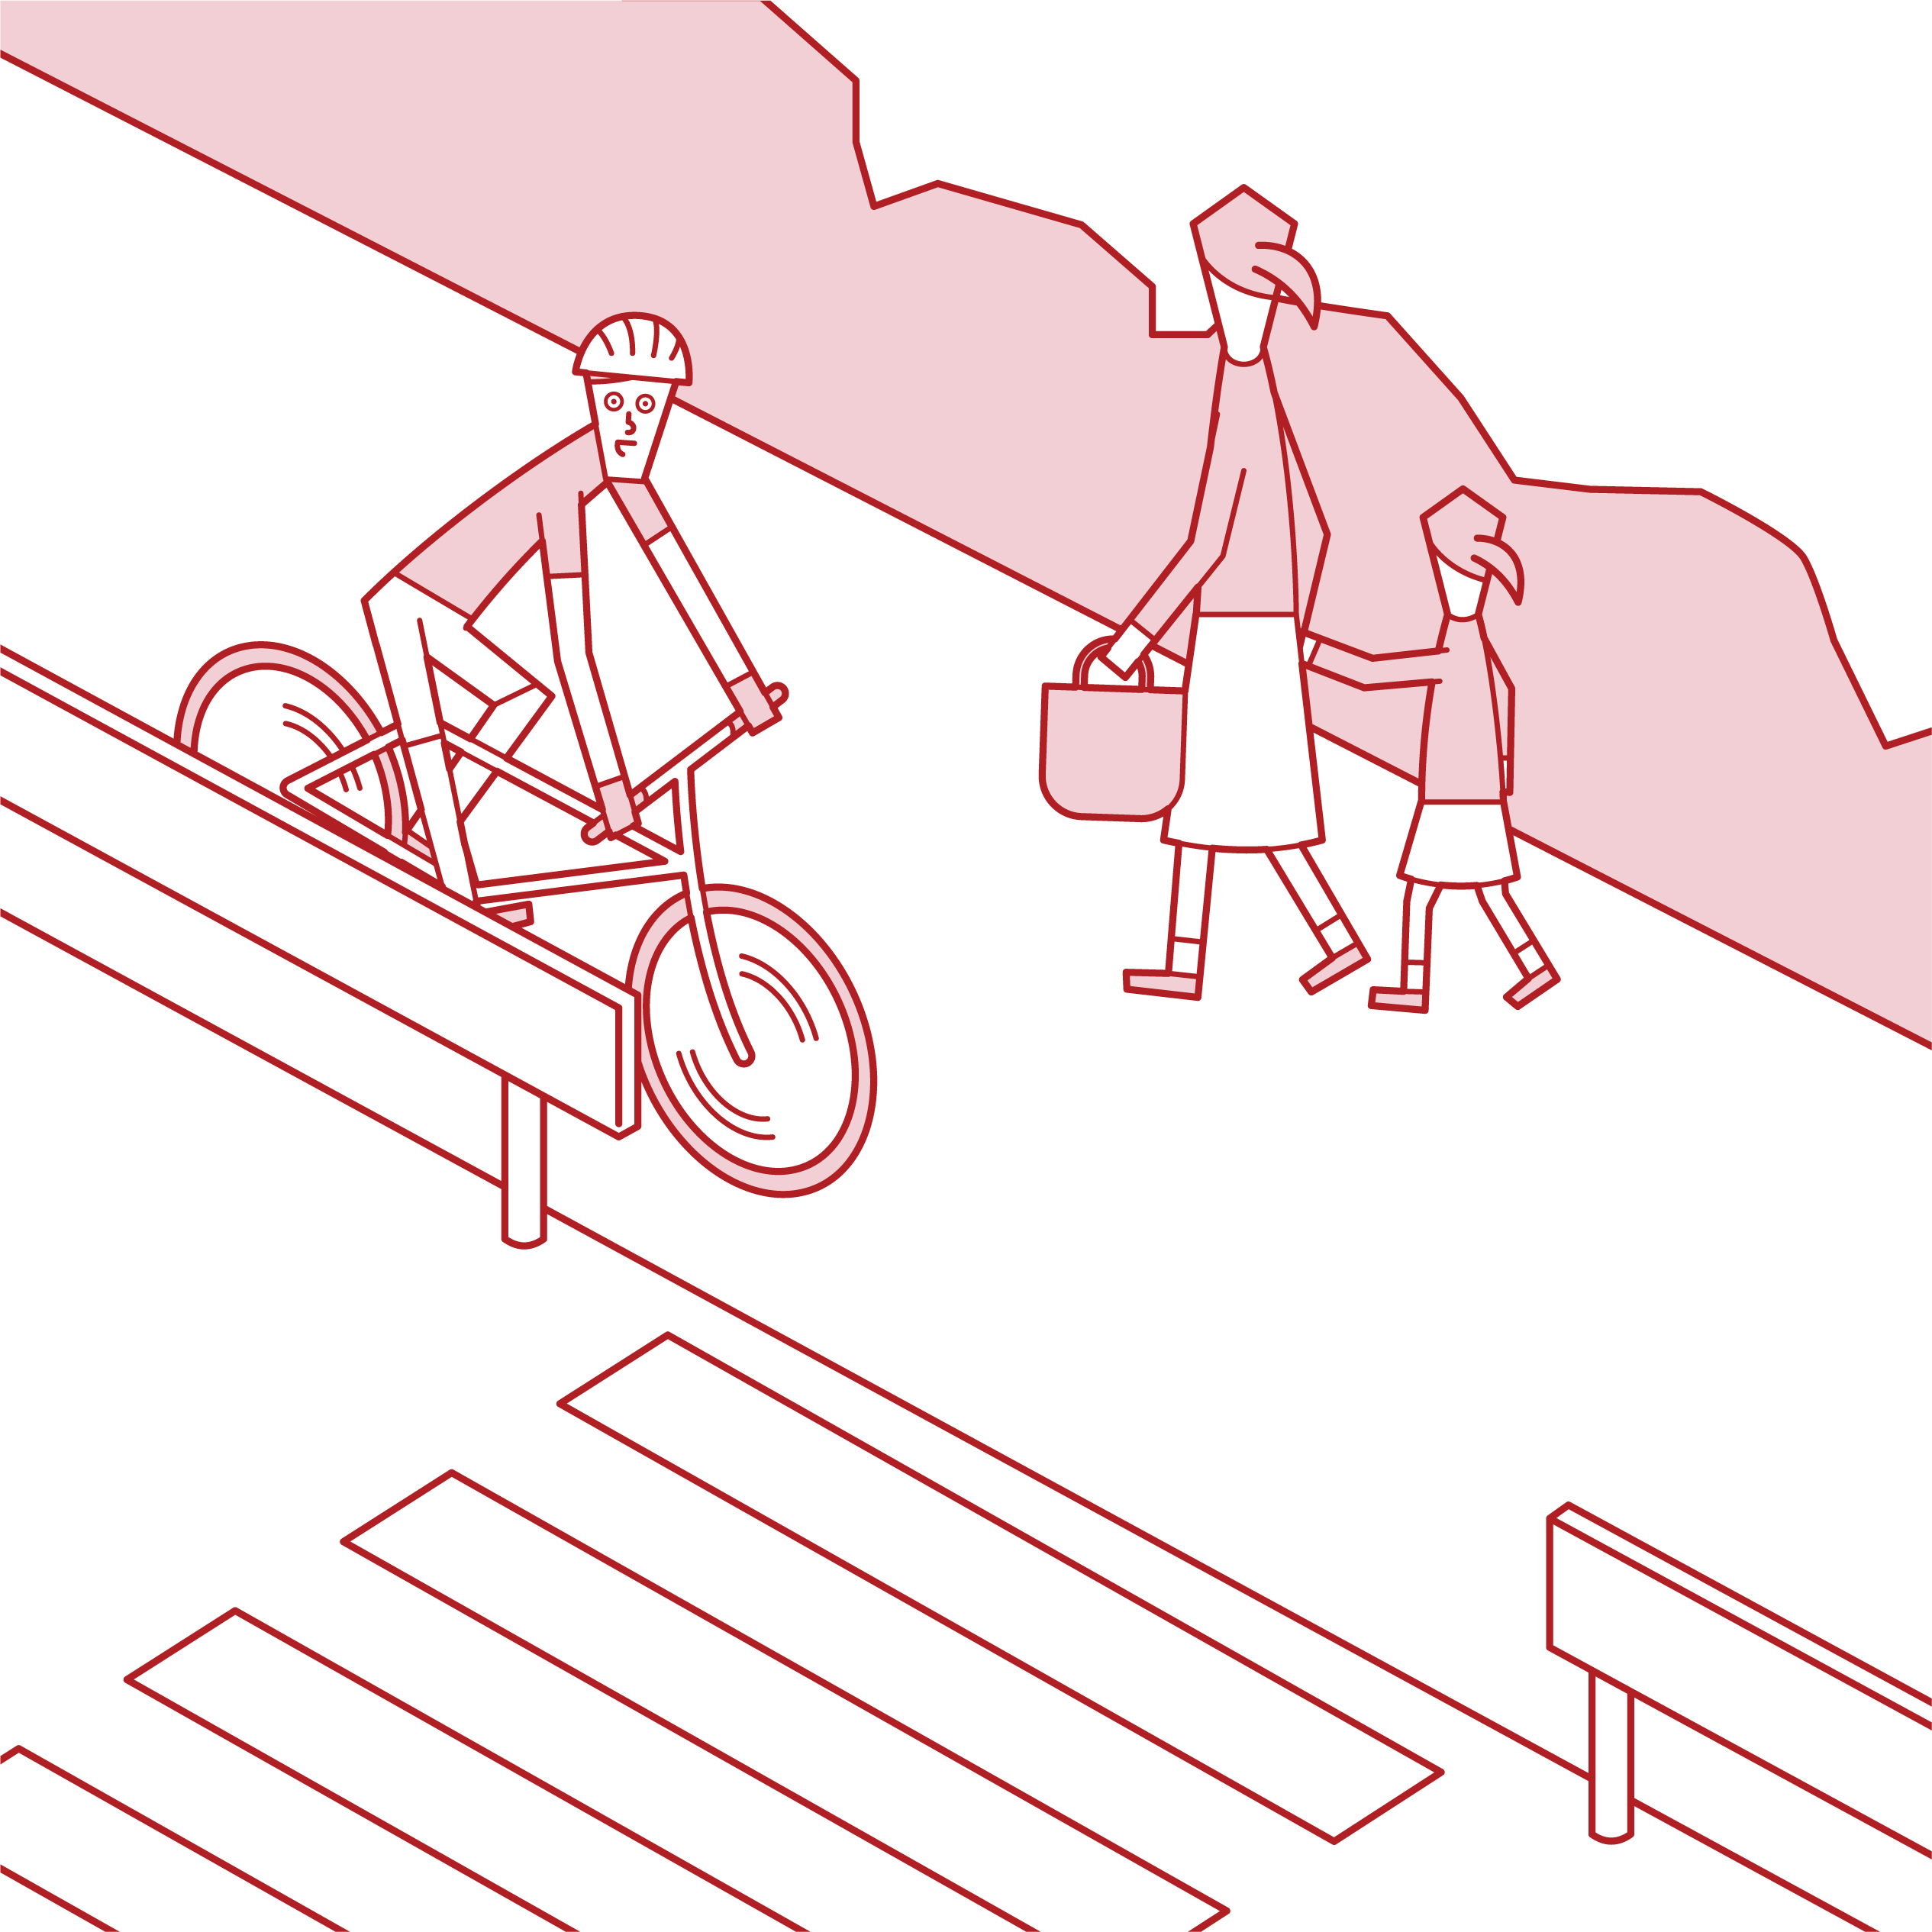 歩行者を優先して歩道を走る自転車乗り（男性）のイラスト